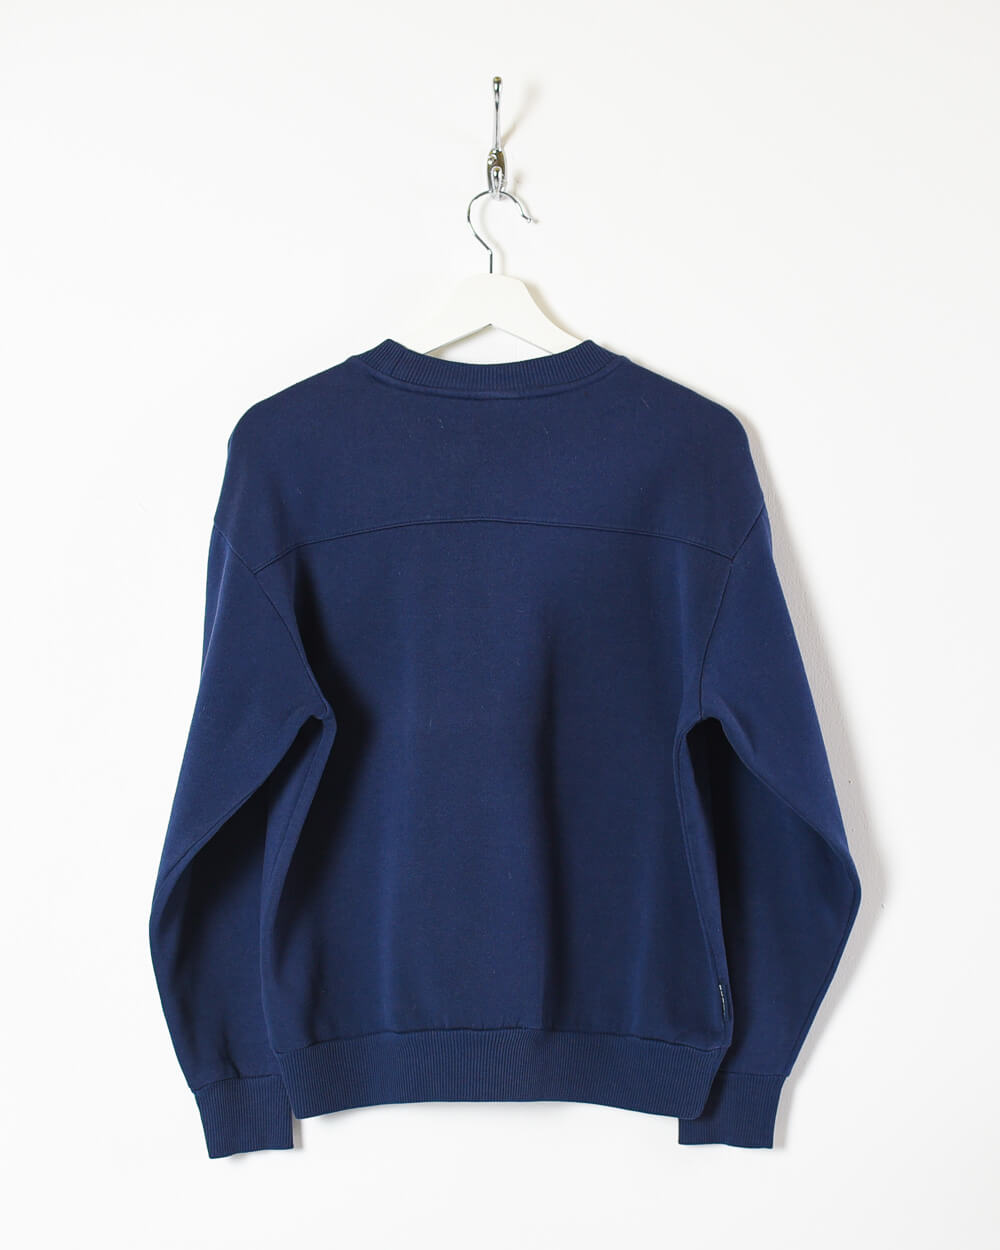 Navy Umbro Sweatshirt - Small